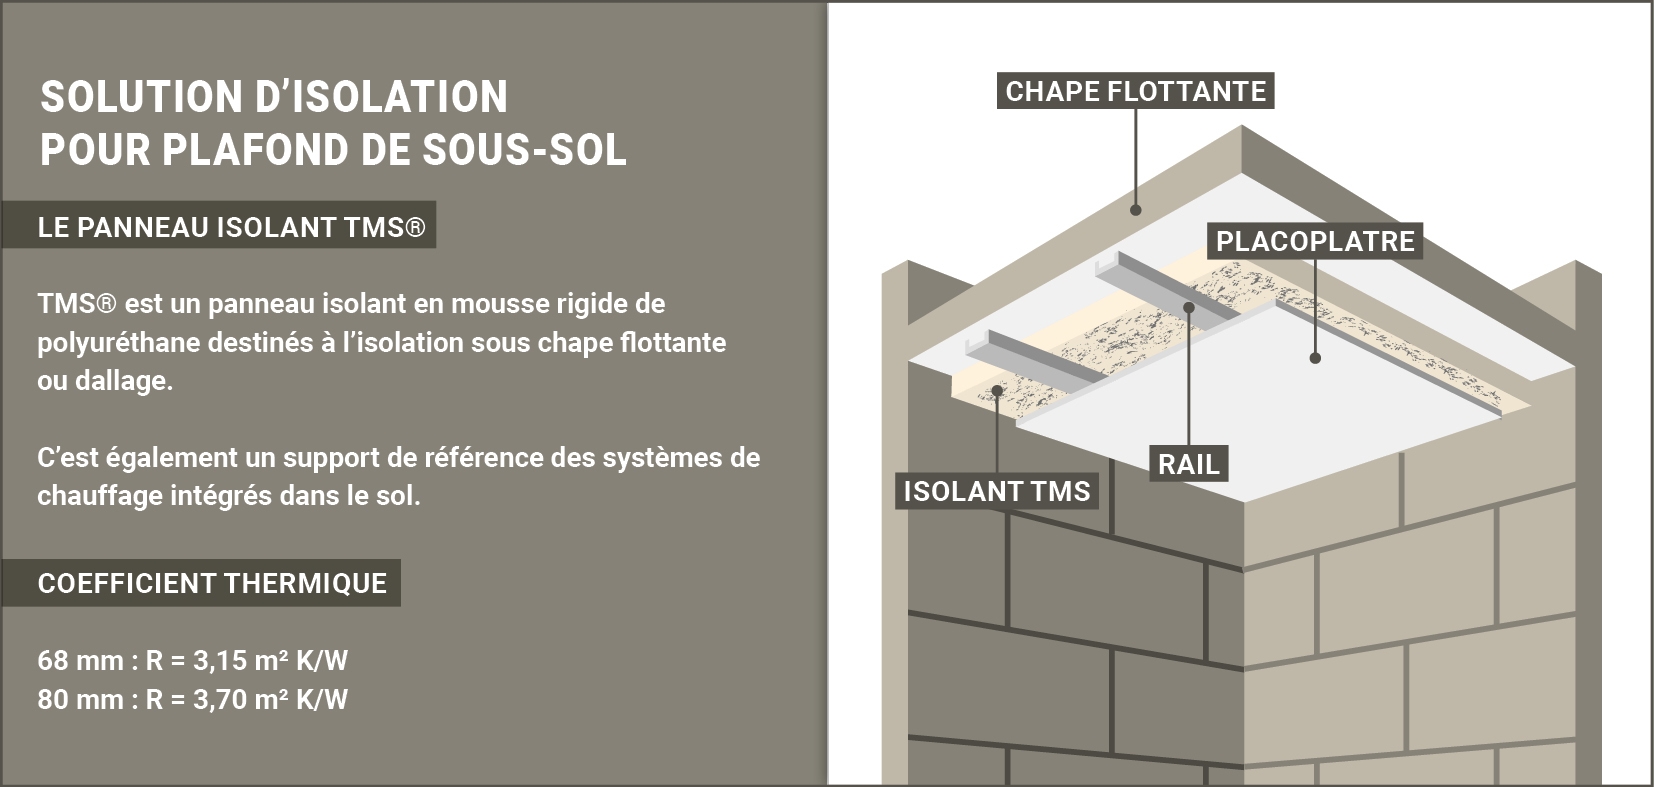 Isolation des plafonds de sous-sol